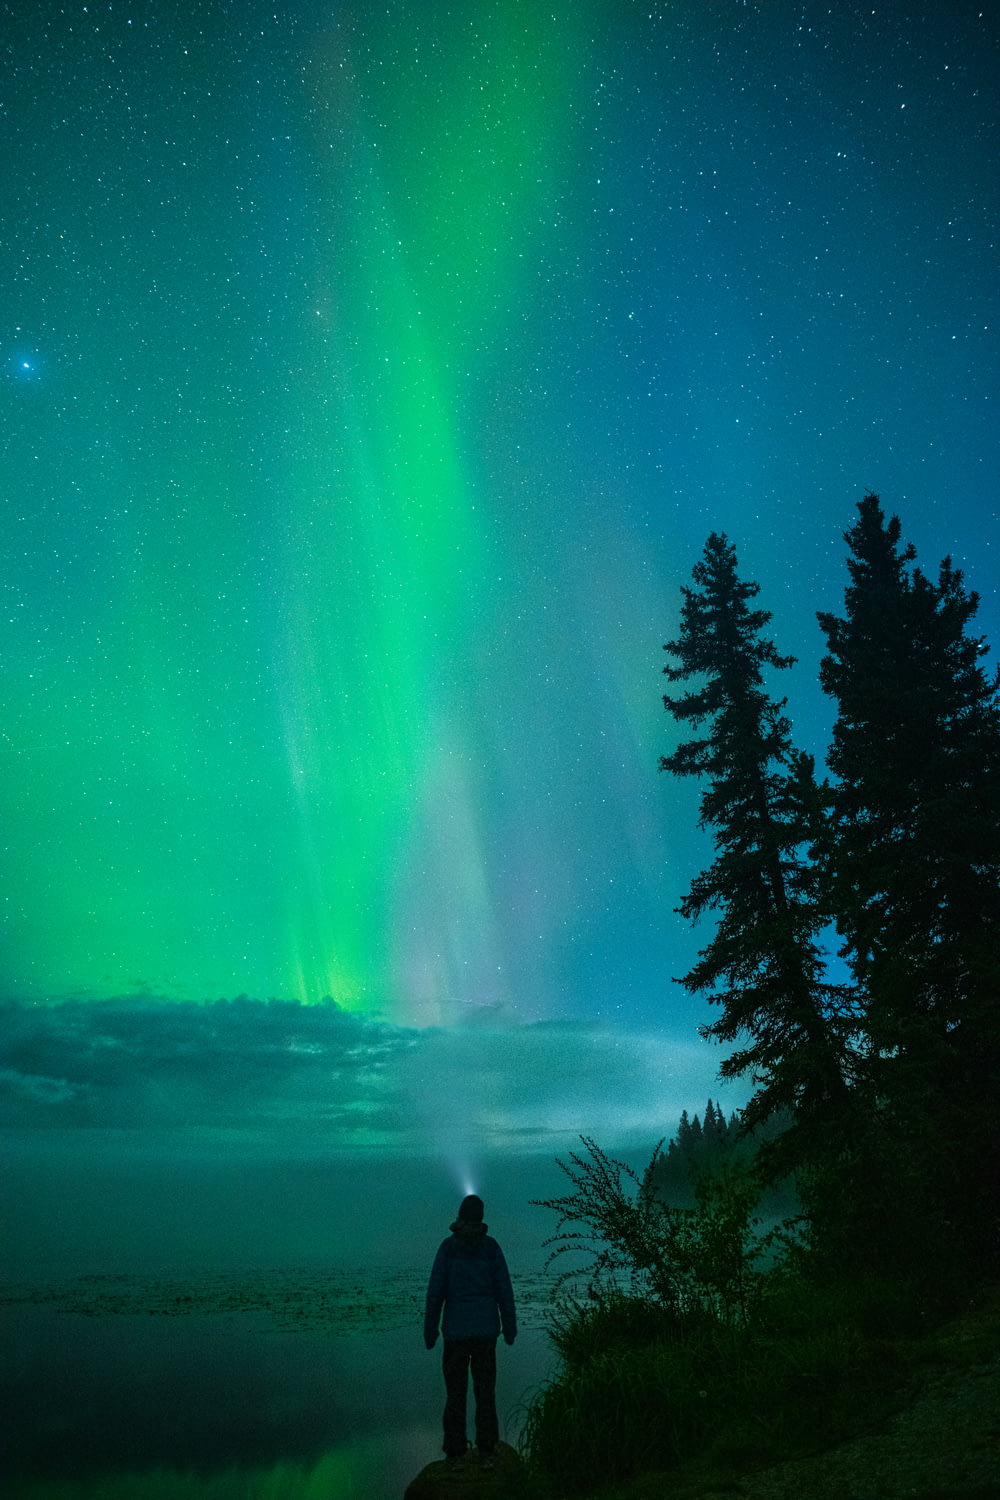 une personne debout devant une aurore verte brillante dans le ciel